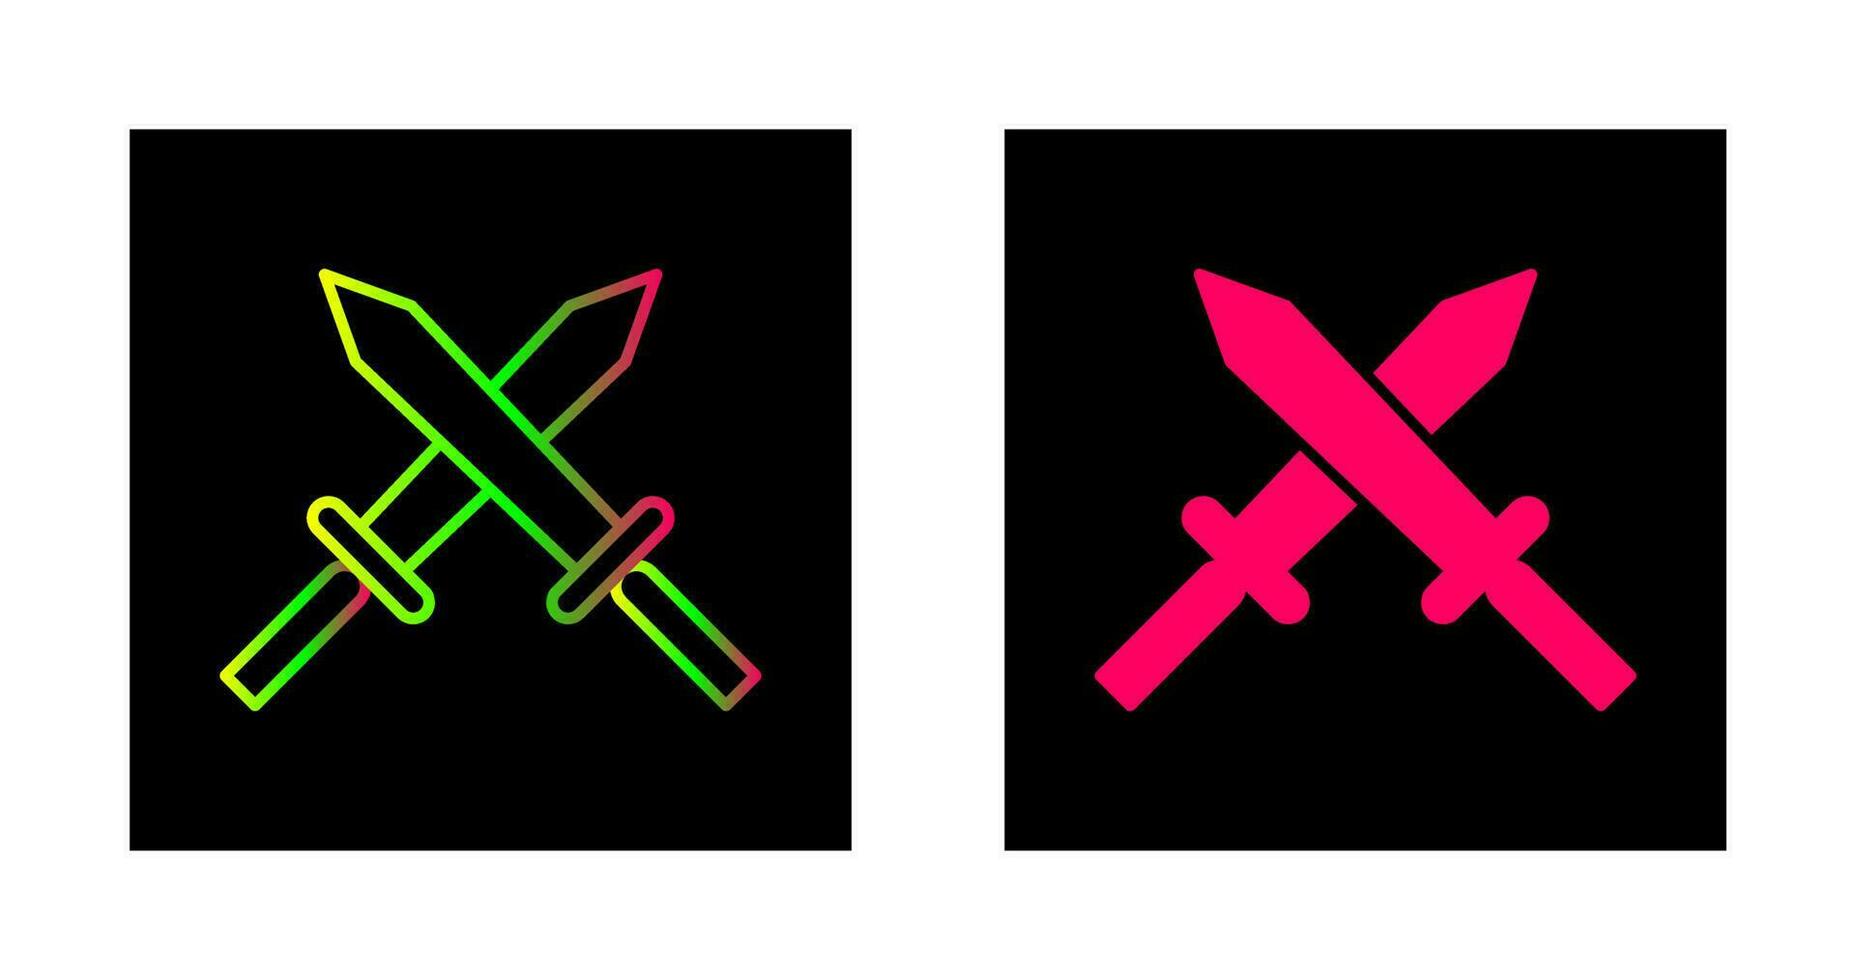 Unique Two Swords Vector Icon